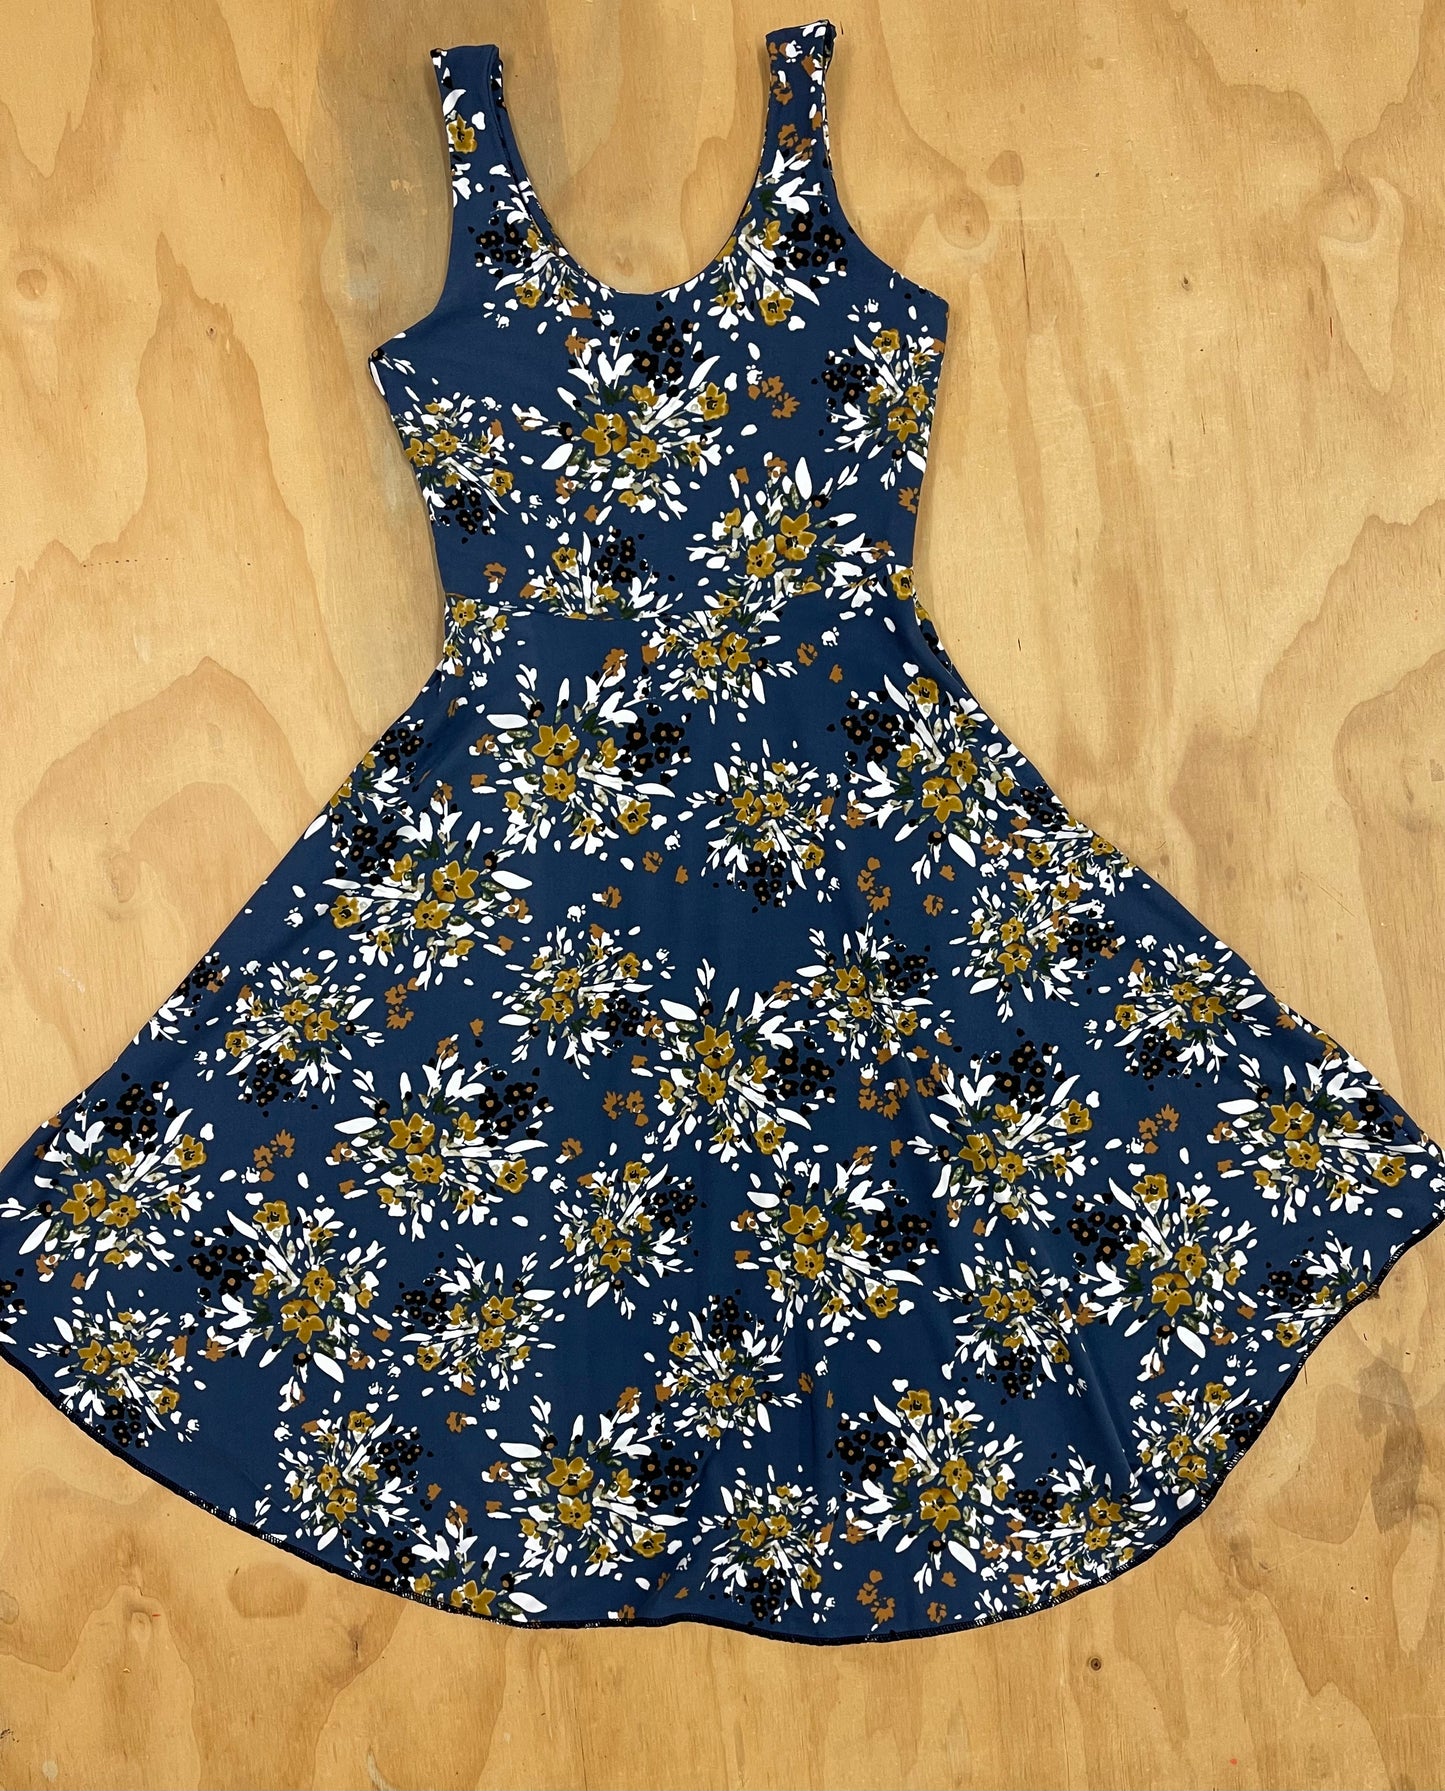 Gardenia Dress